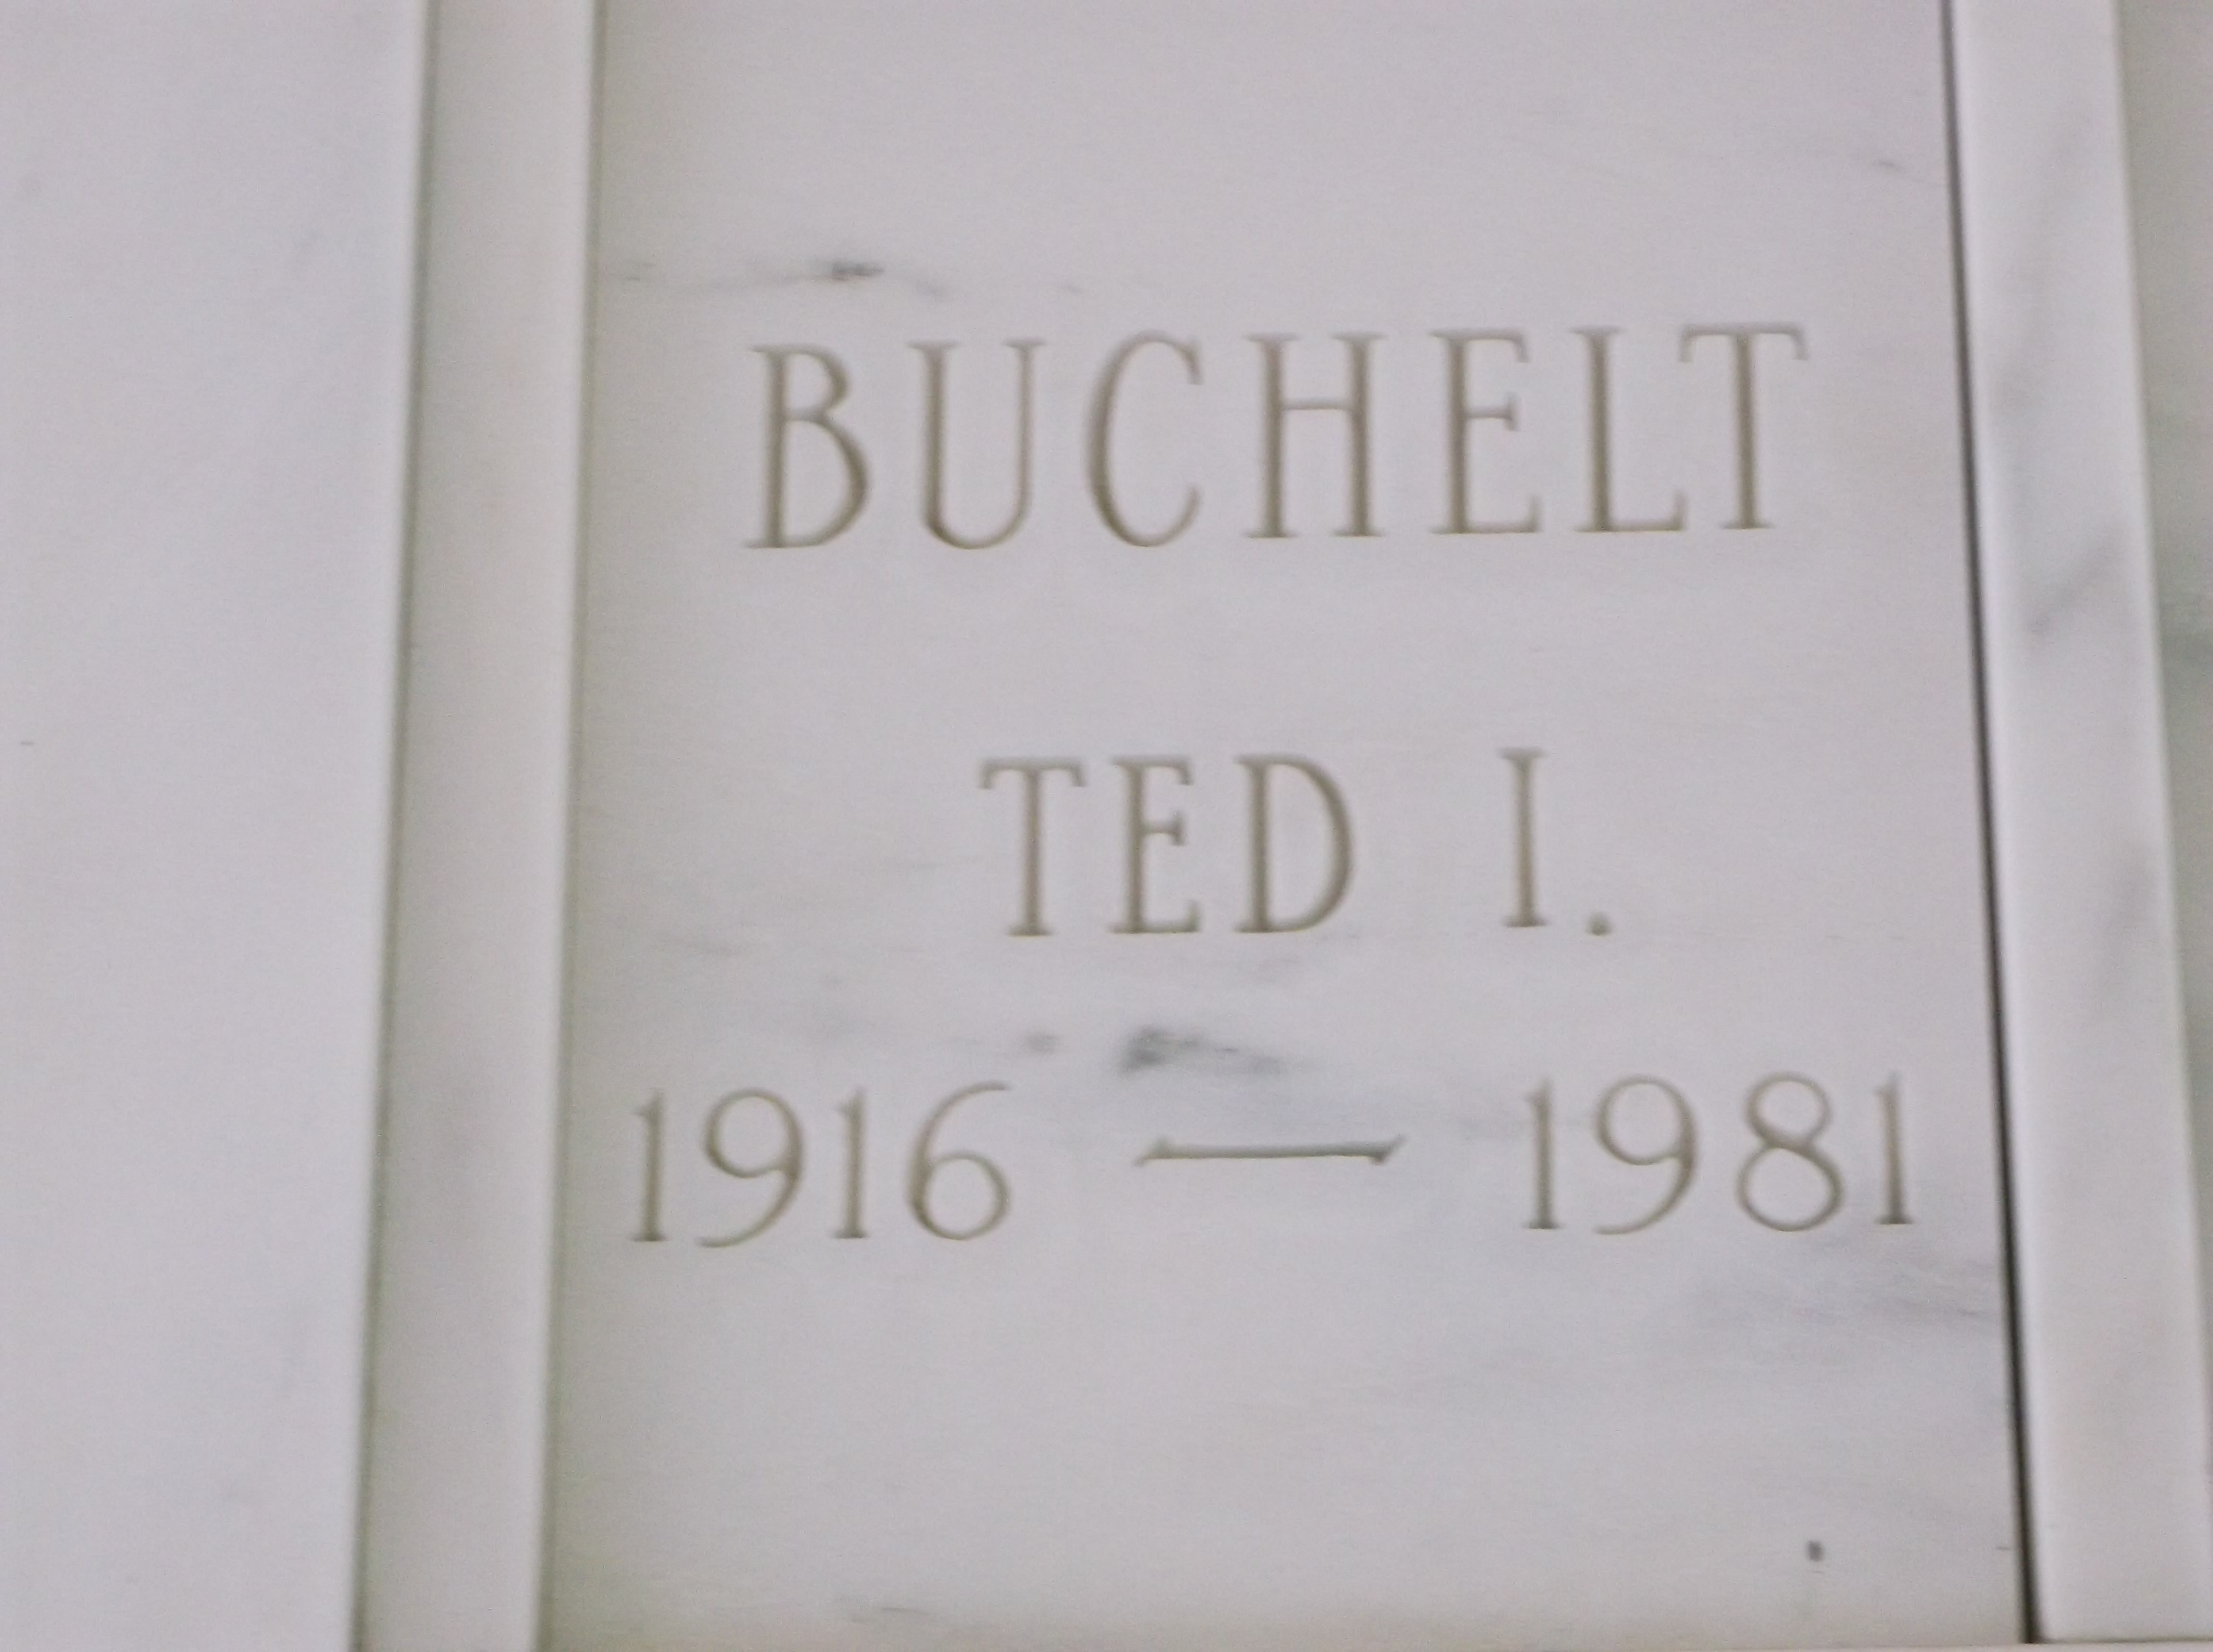 Ted I Buchelt